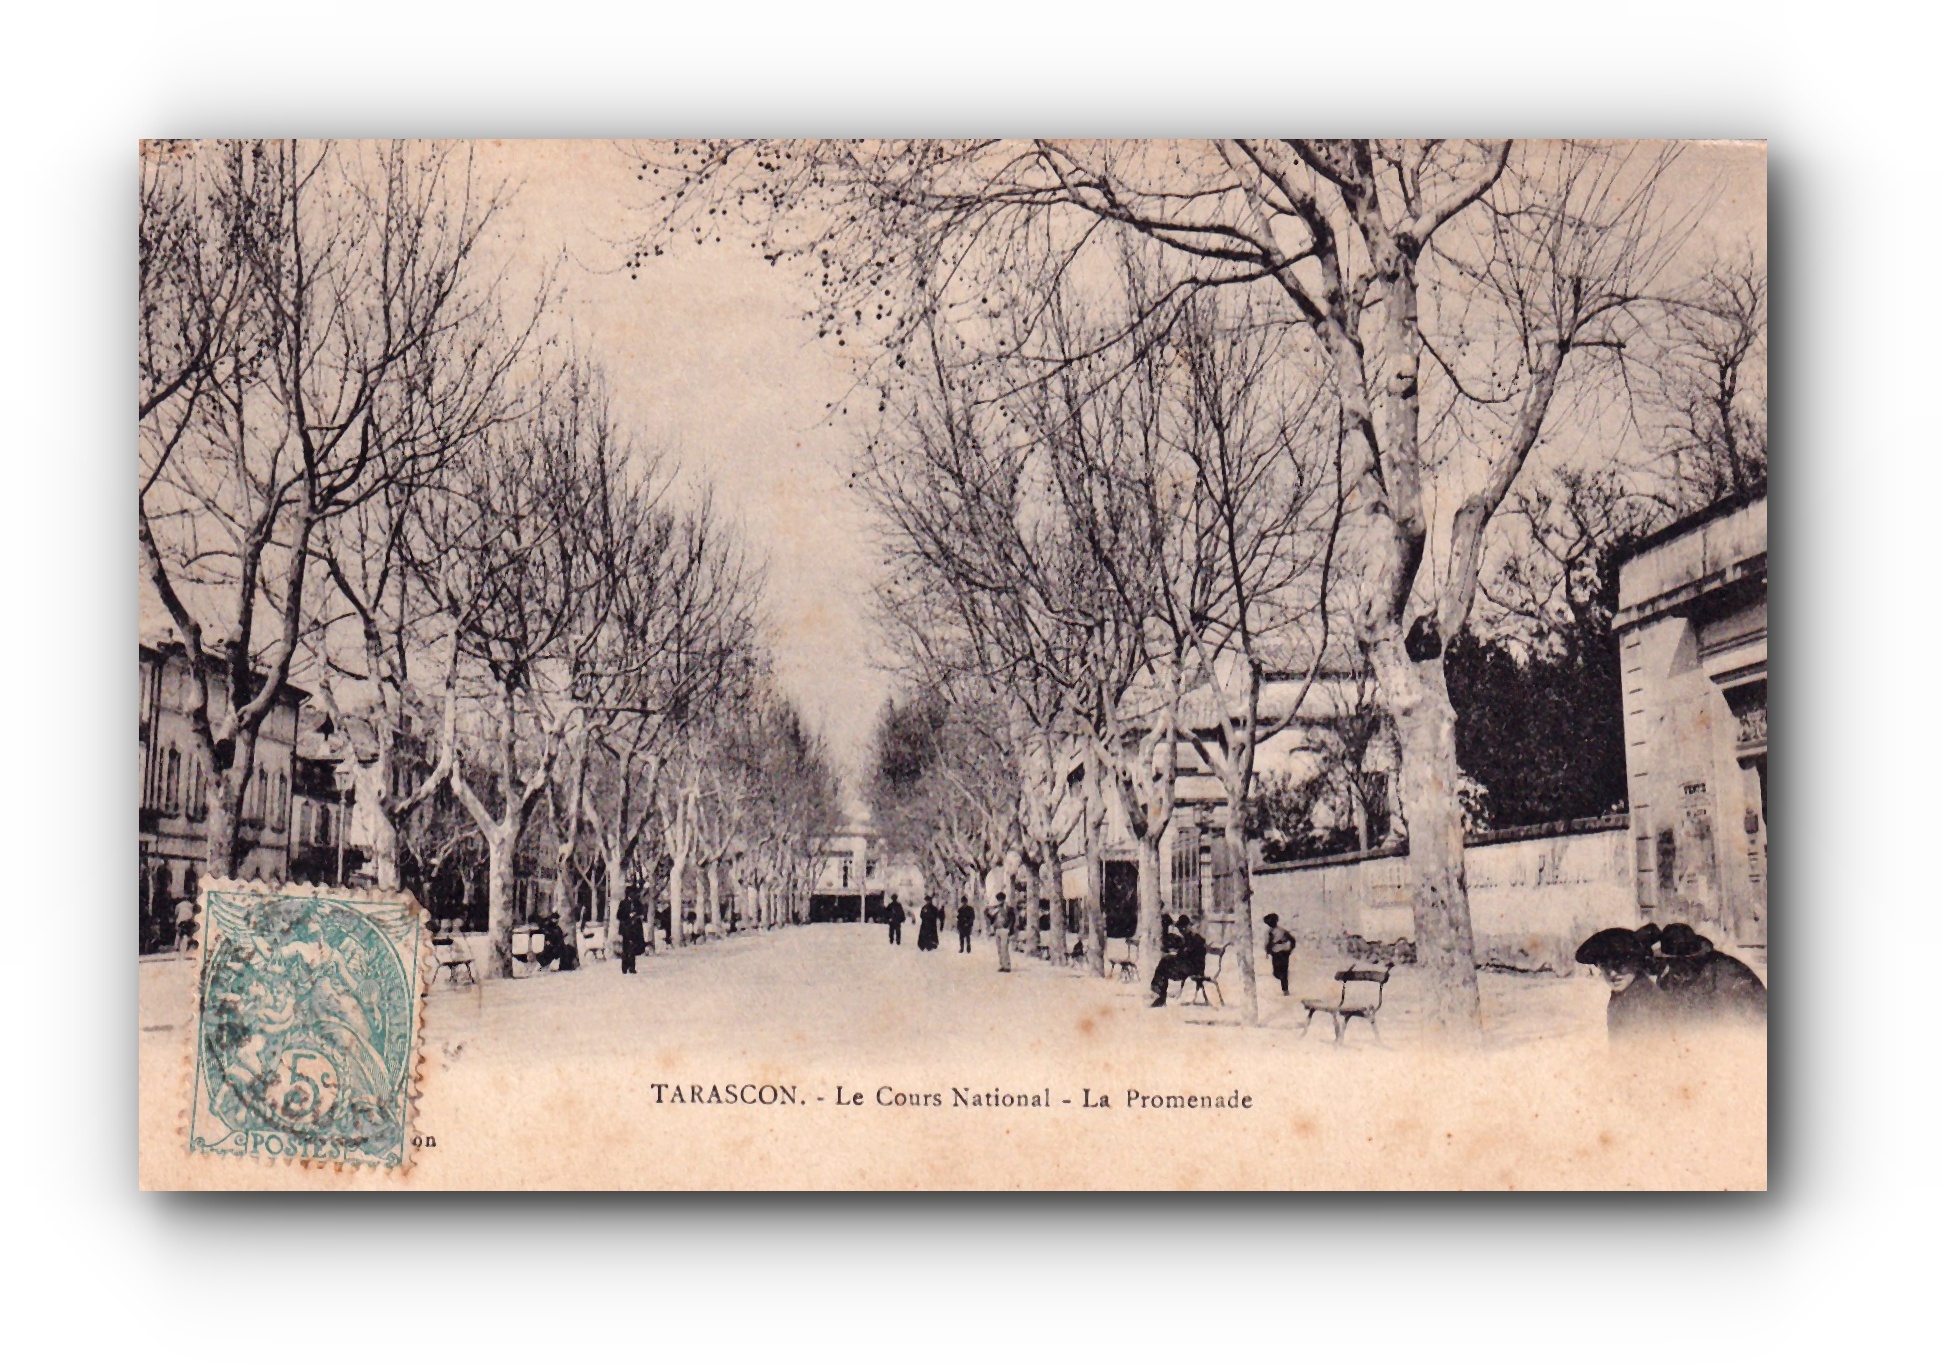 - Le Cours National - La Promenade - TARASCON - 1904 -